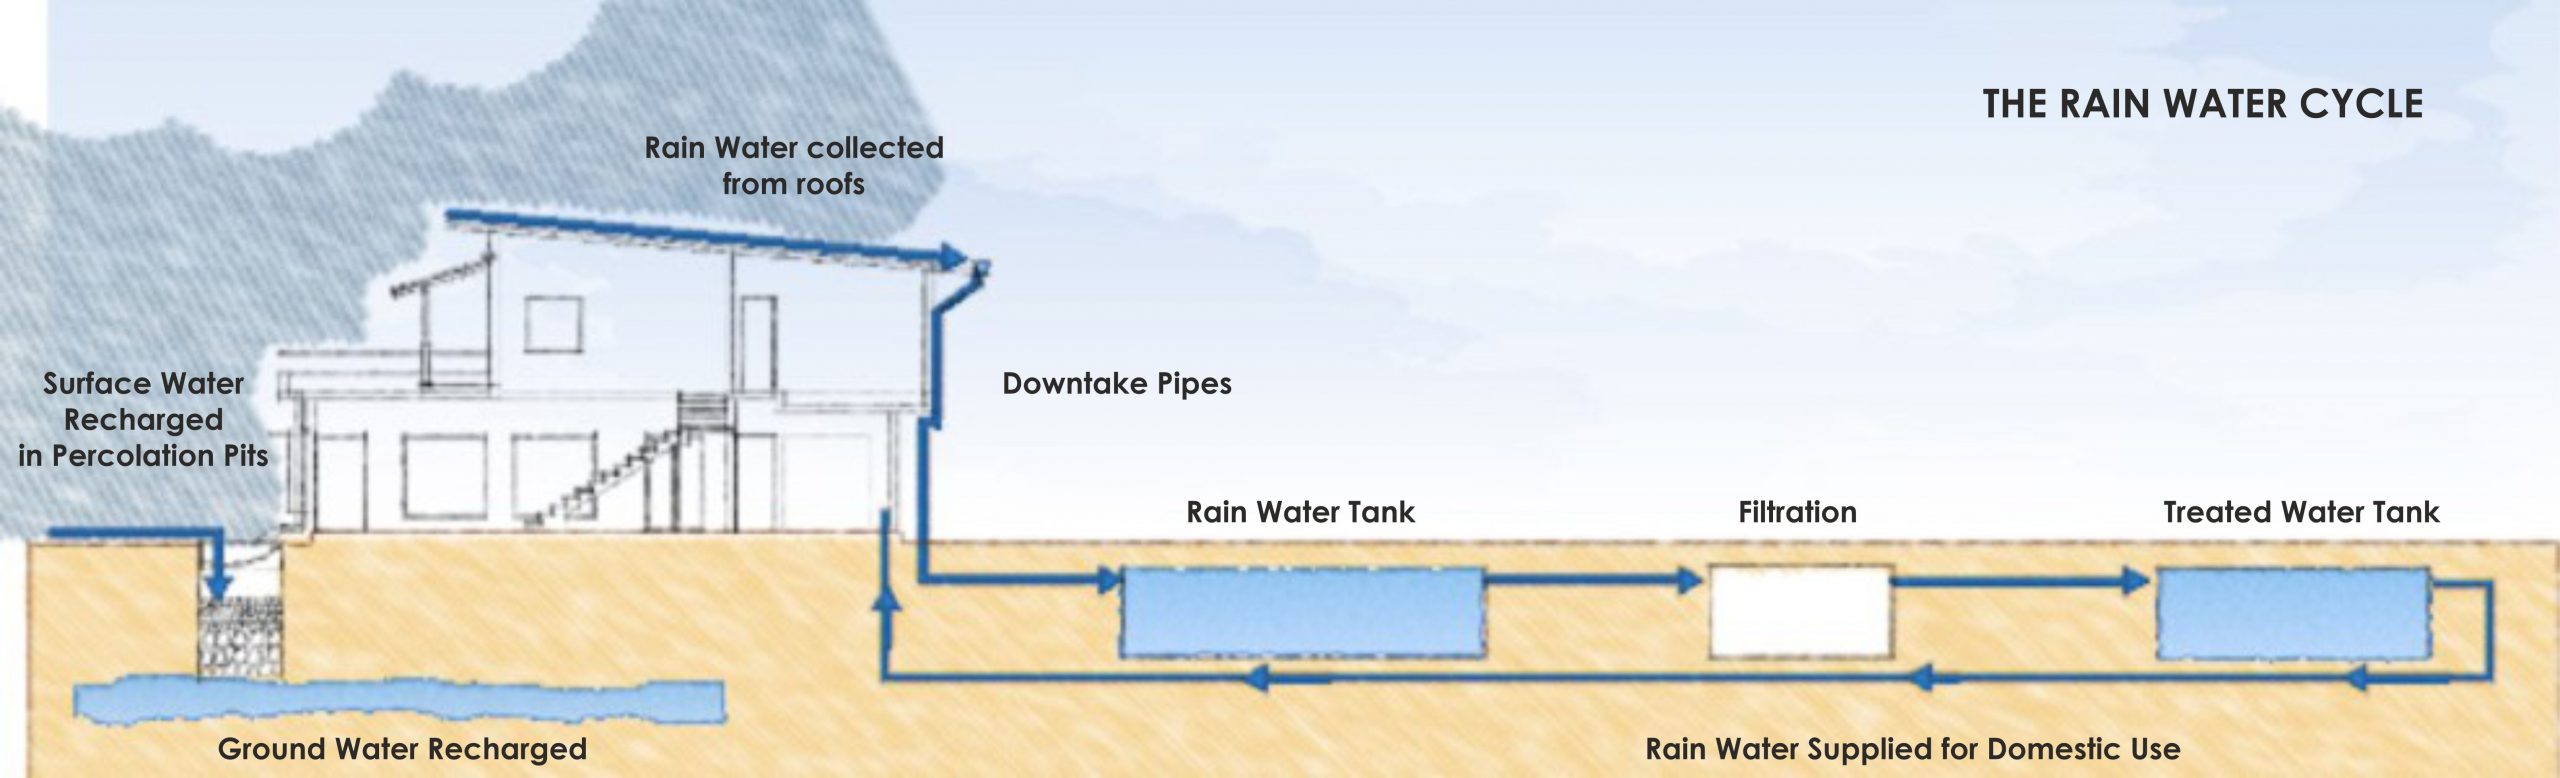 The Rainwater cycle